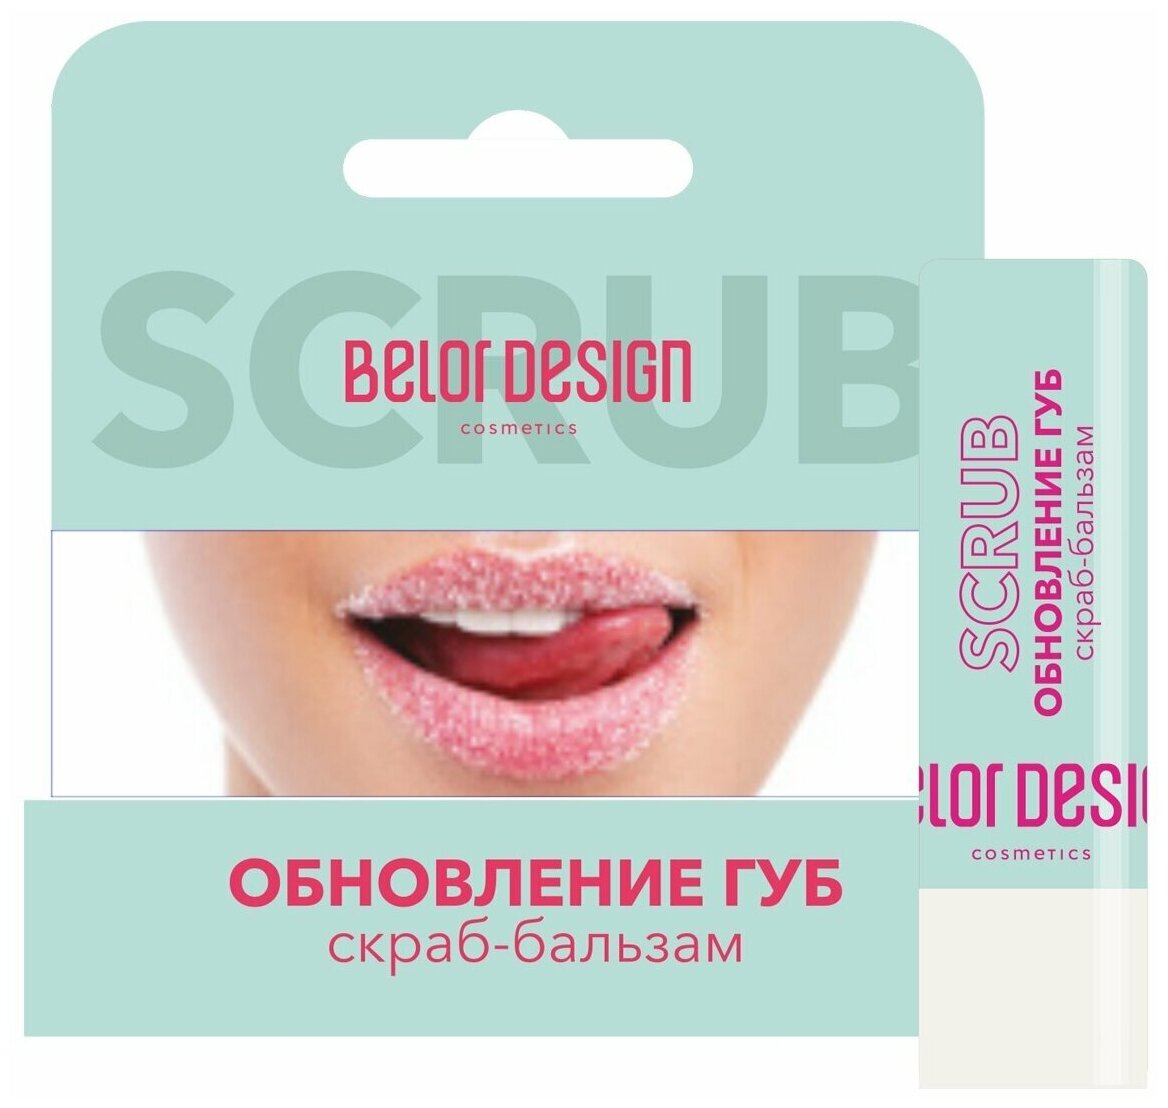 Скраб-бальзам Обновление губ Belor Design, 4г